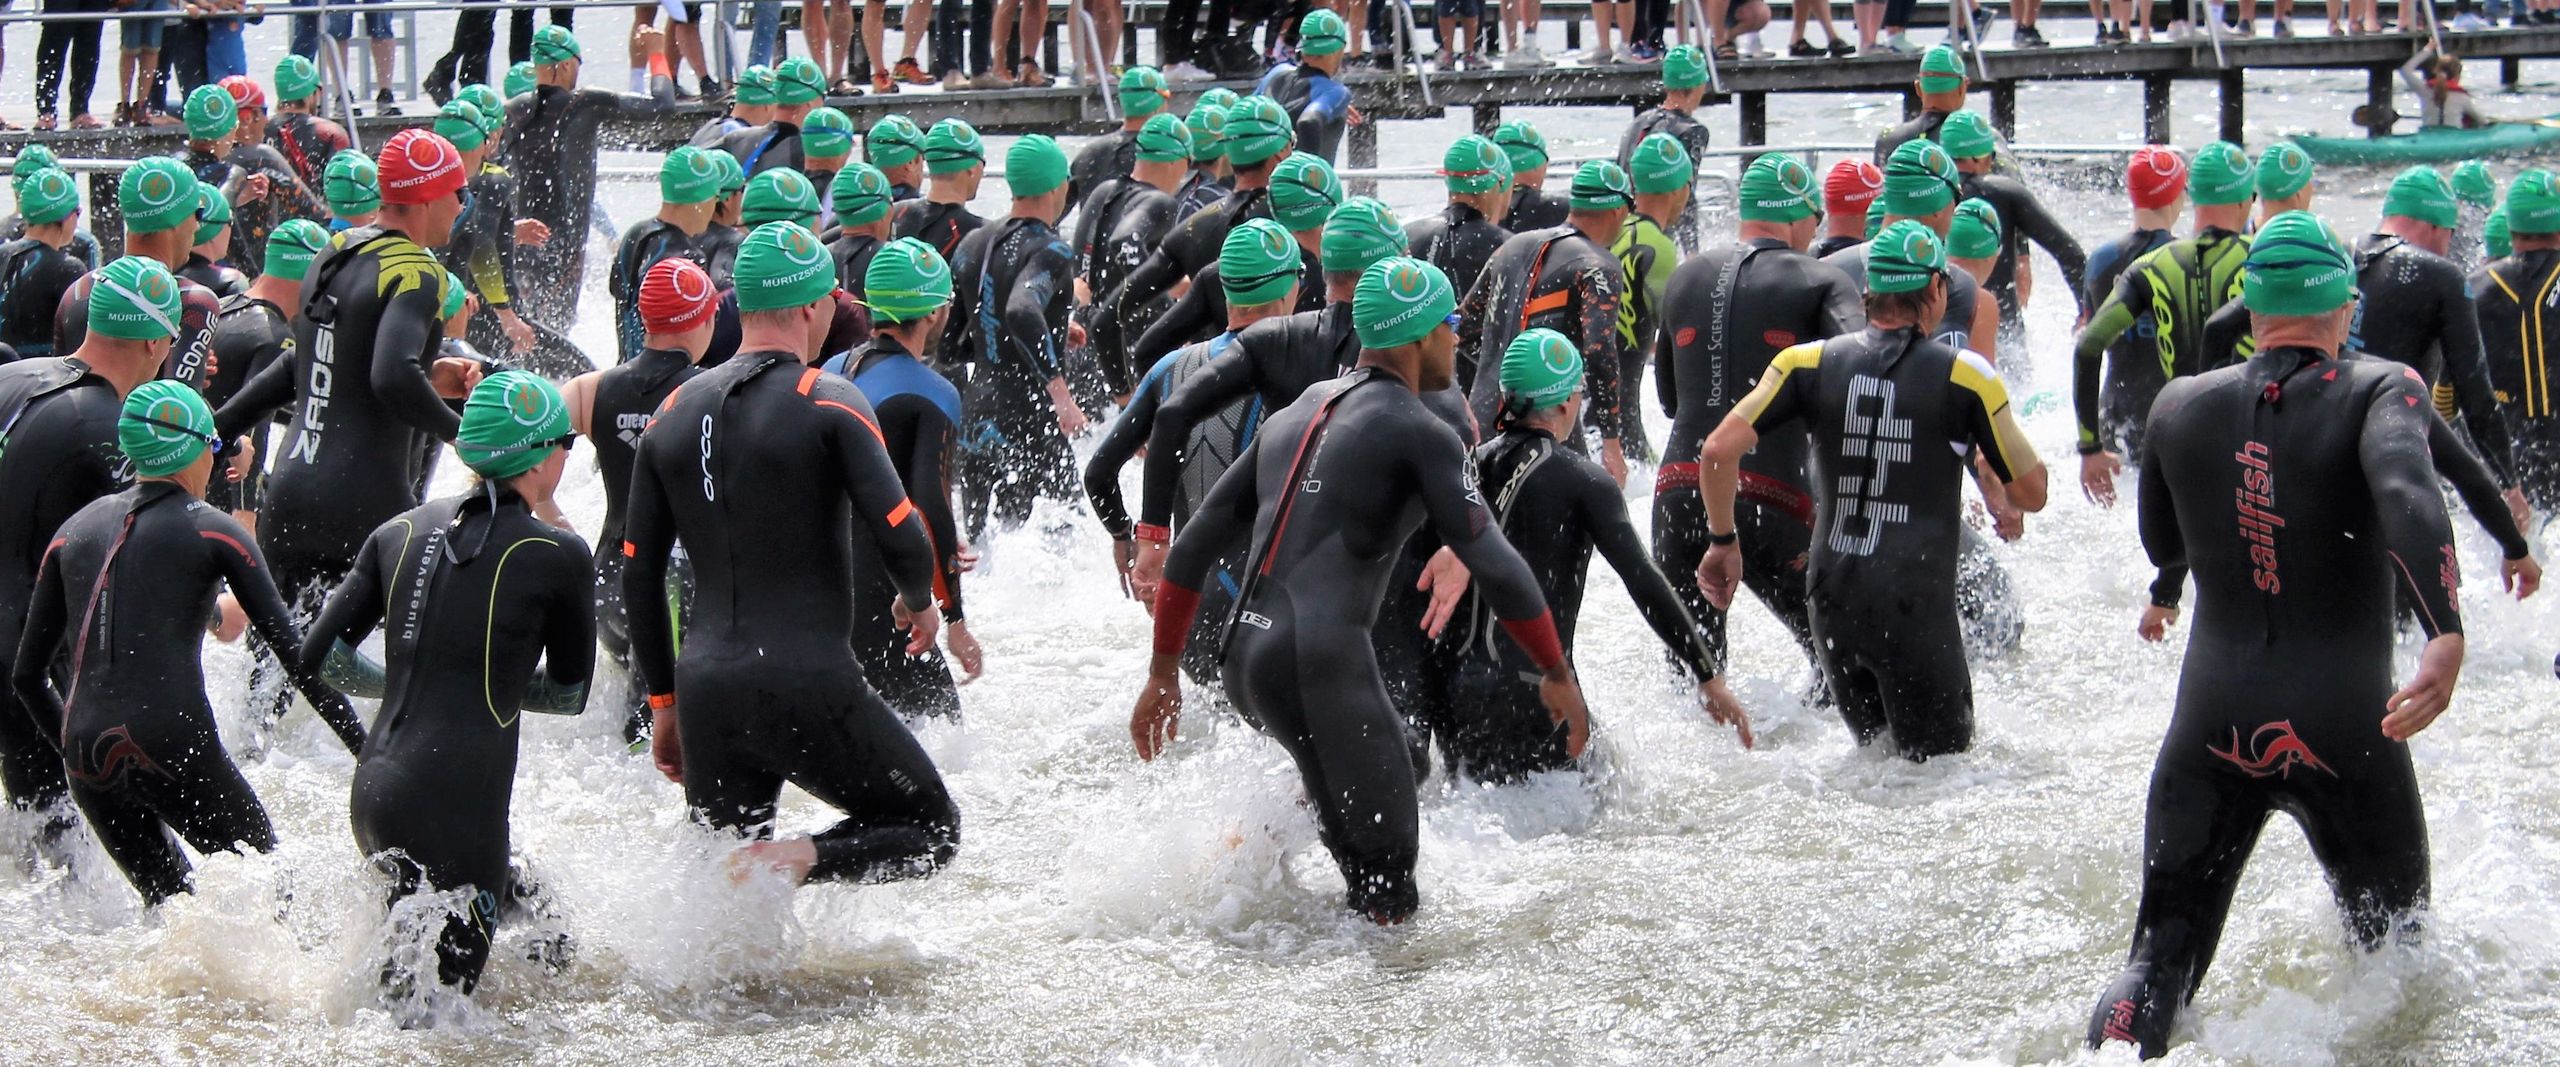 Schwimmer:innen in Neoprenanzügen laufen ins Wasser beim Müritz-Triathlon 2021.